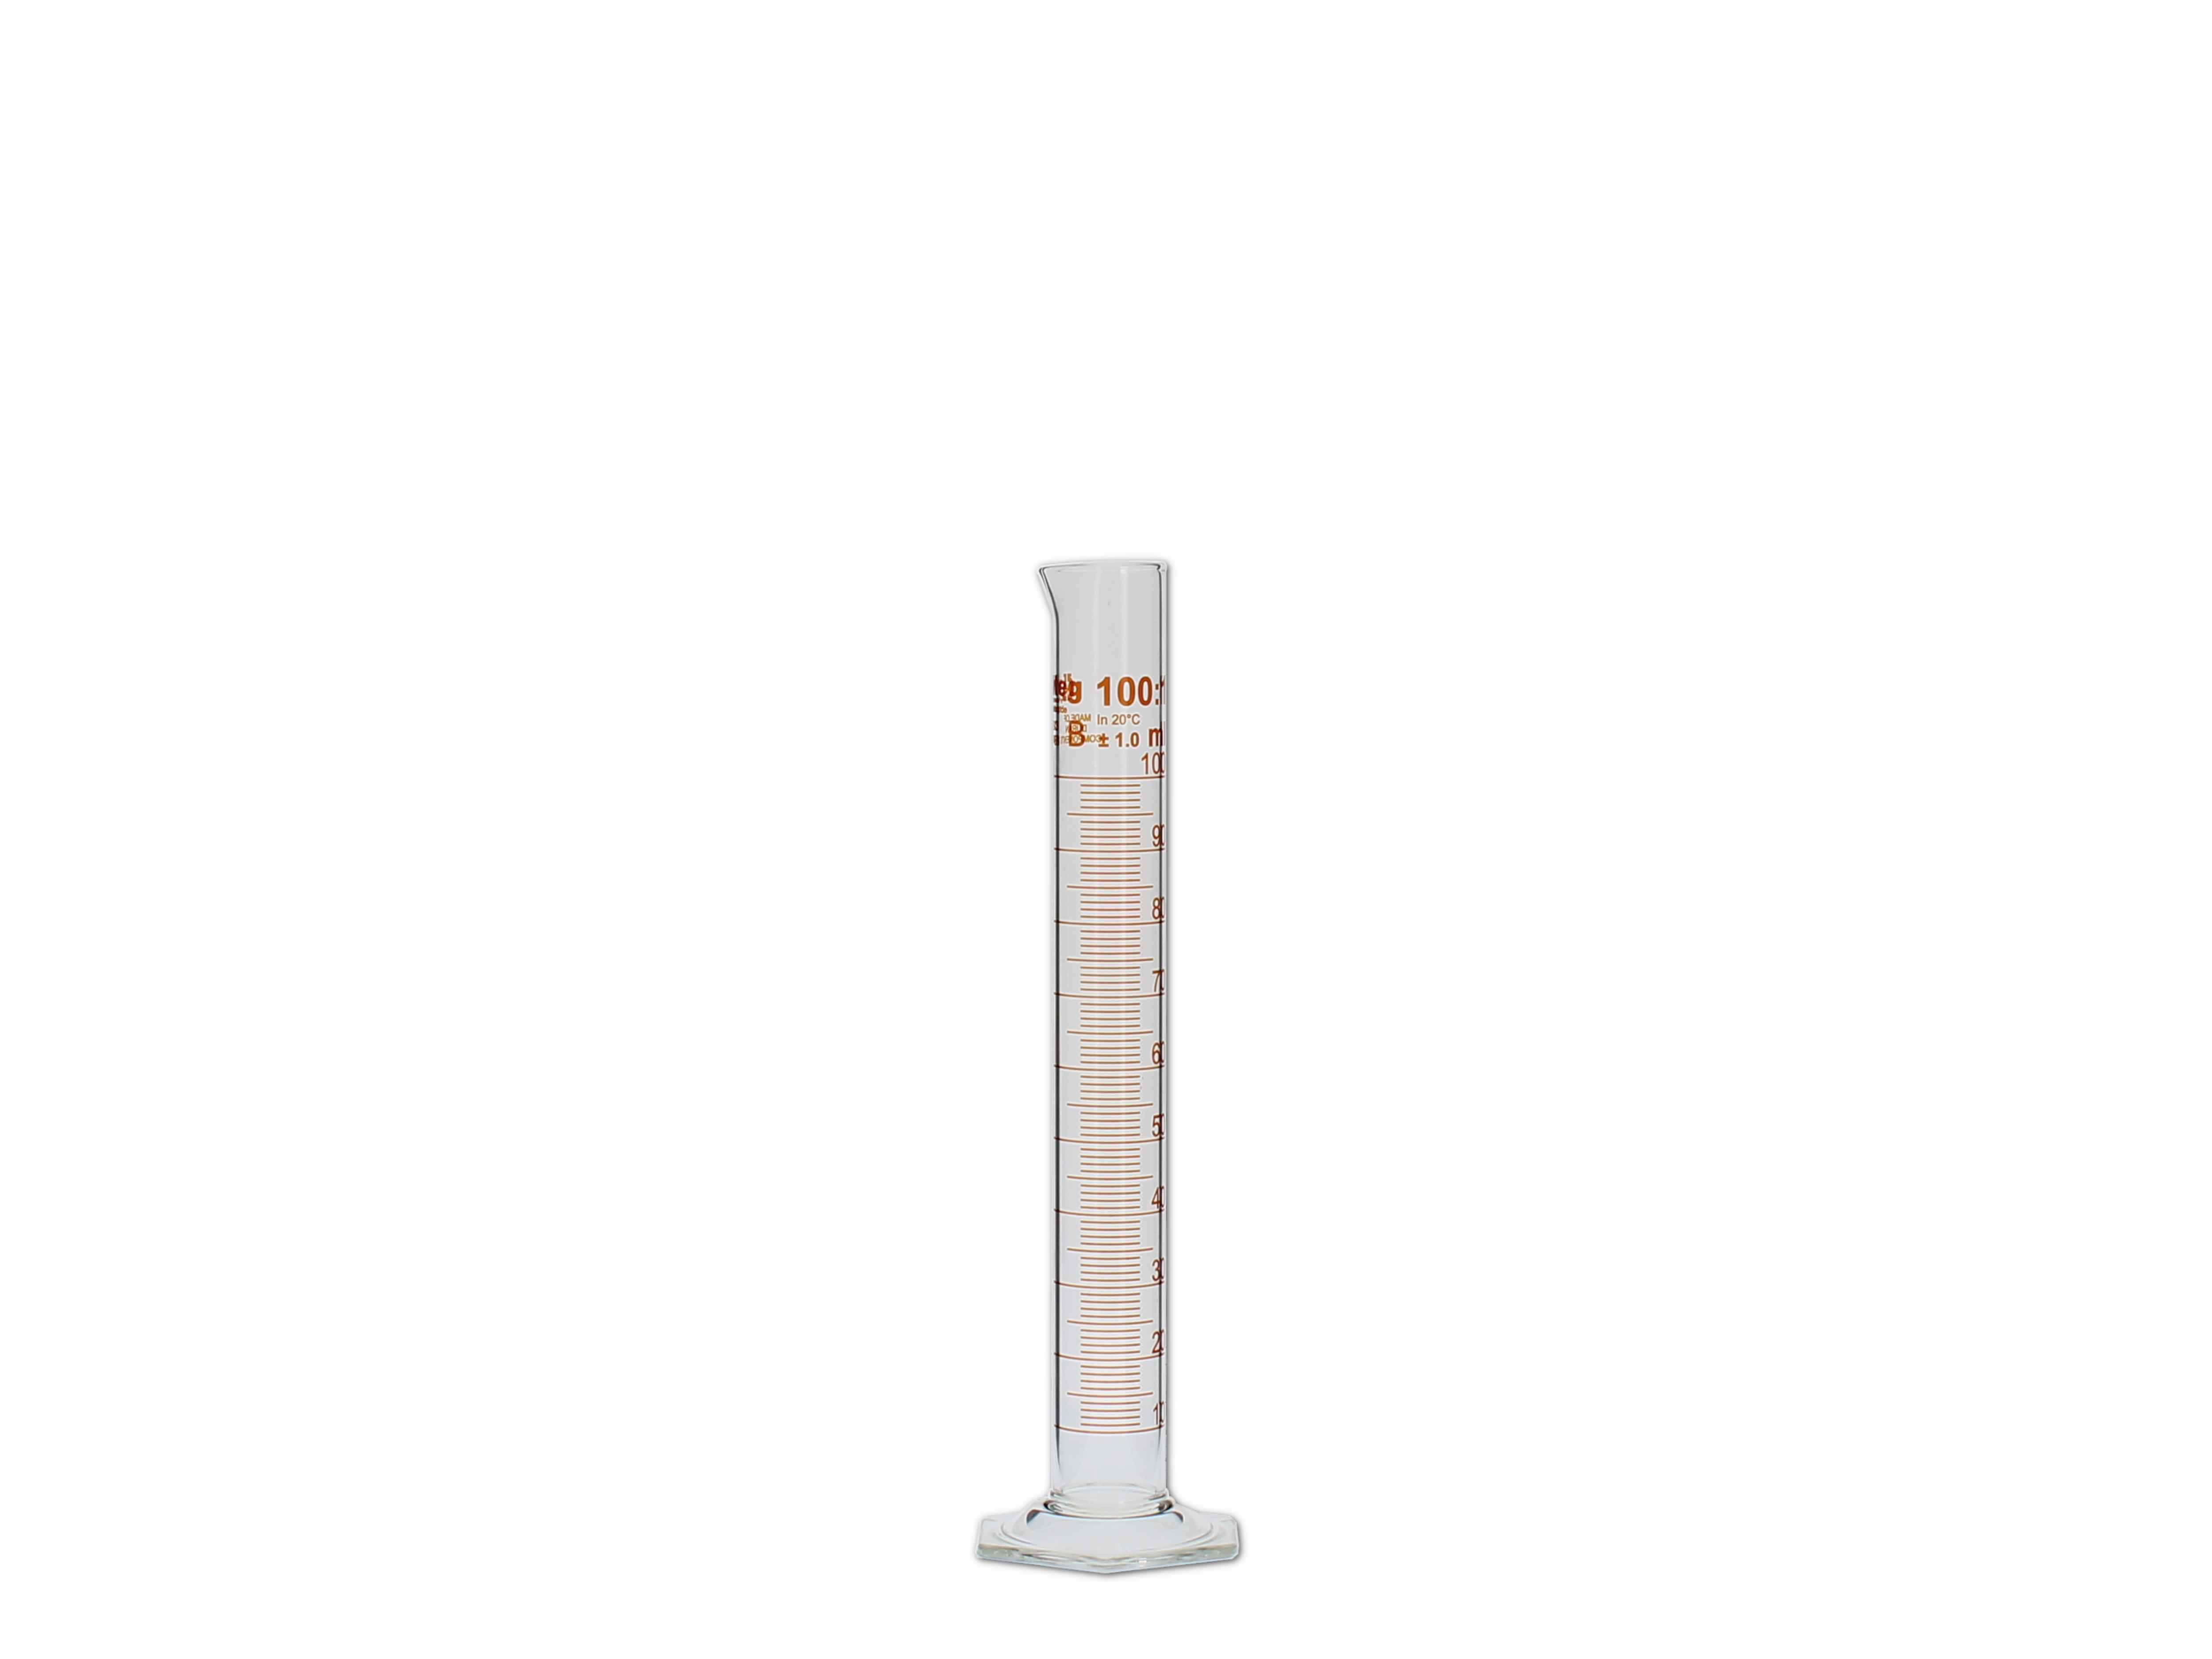    Messzylinder, Glas, graduiert - 100ml (hohe Form)